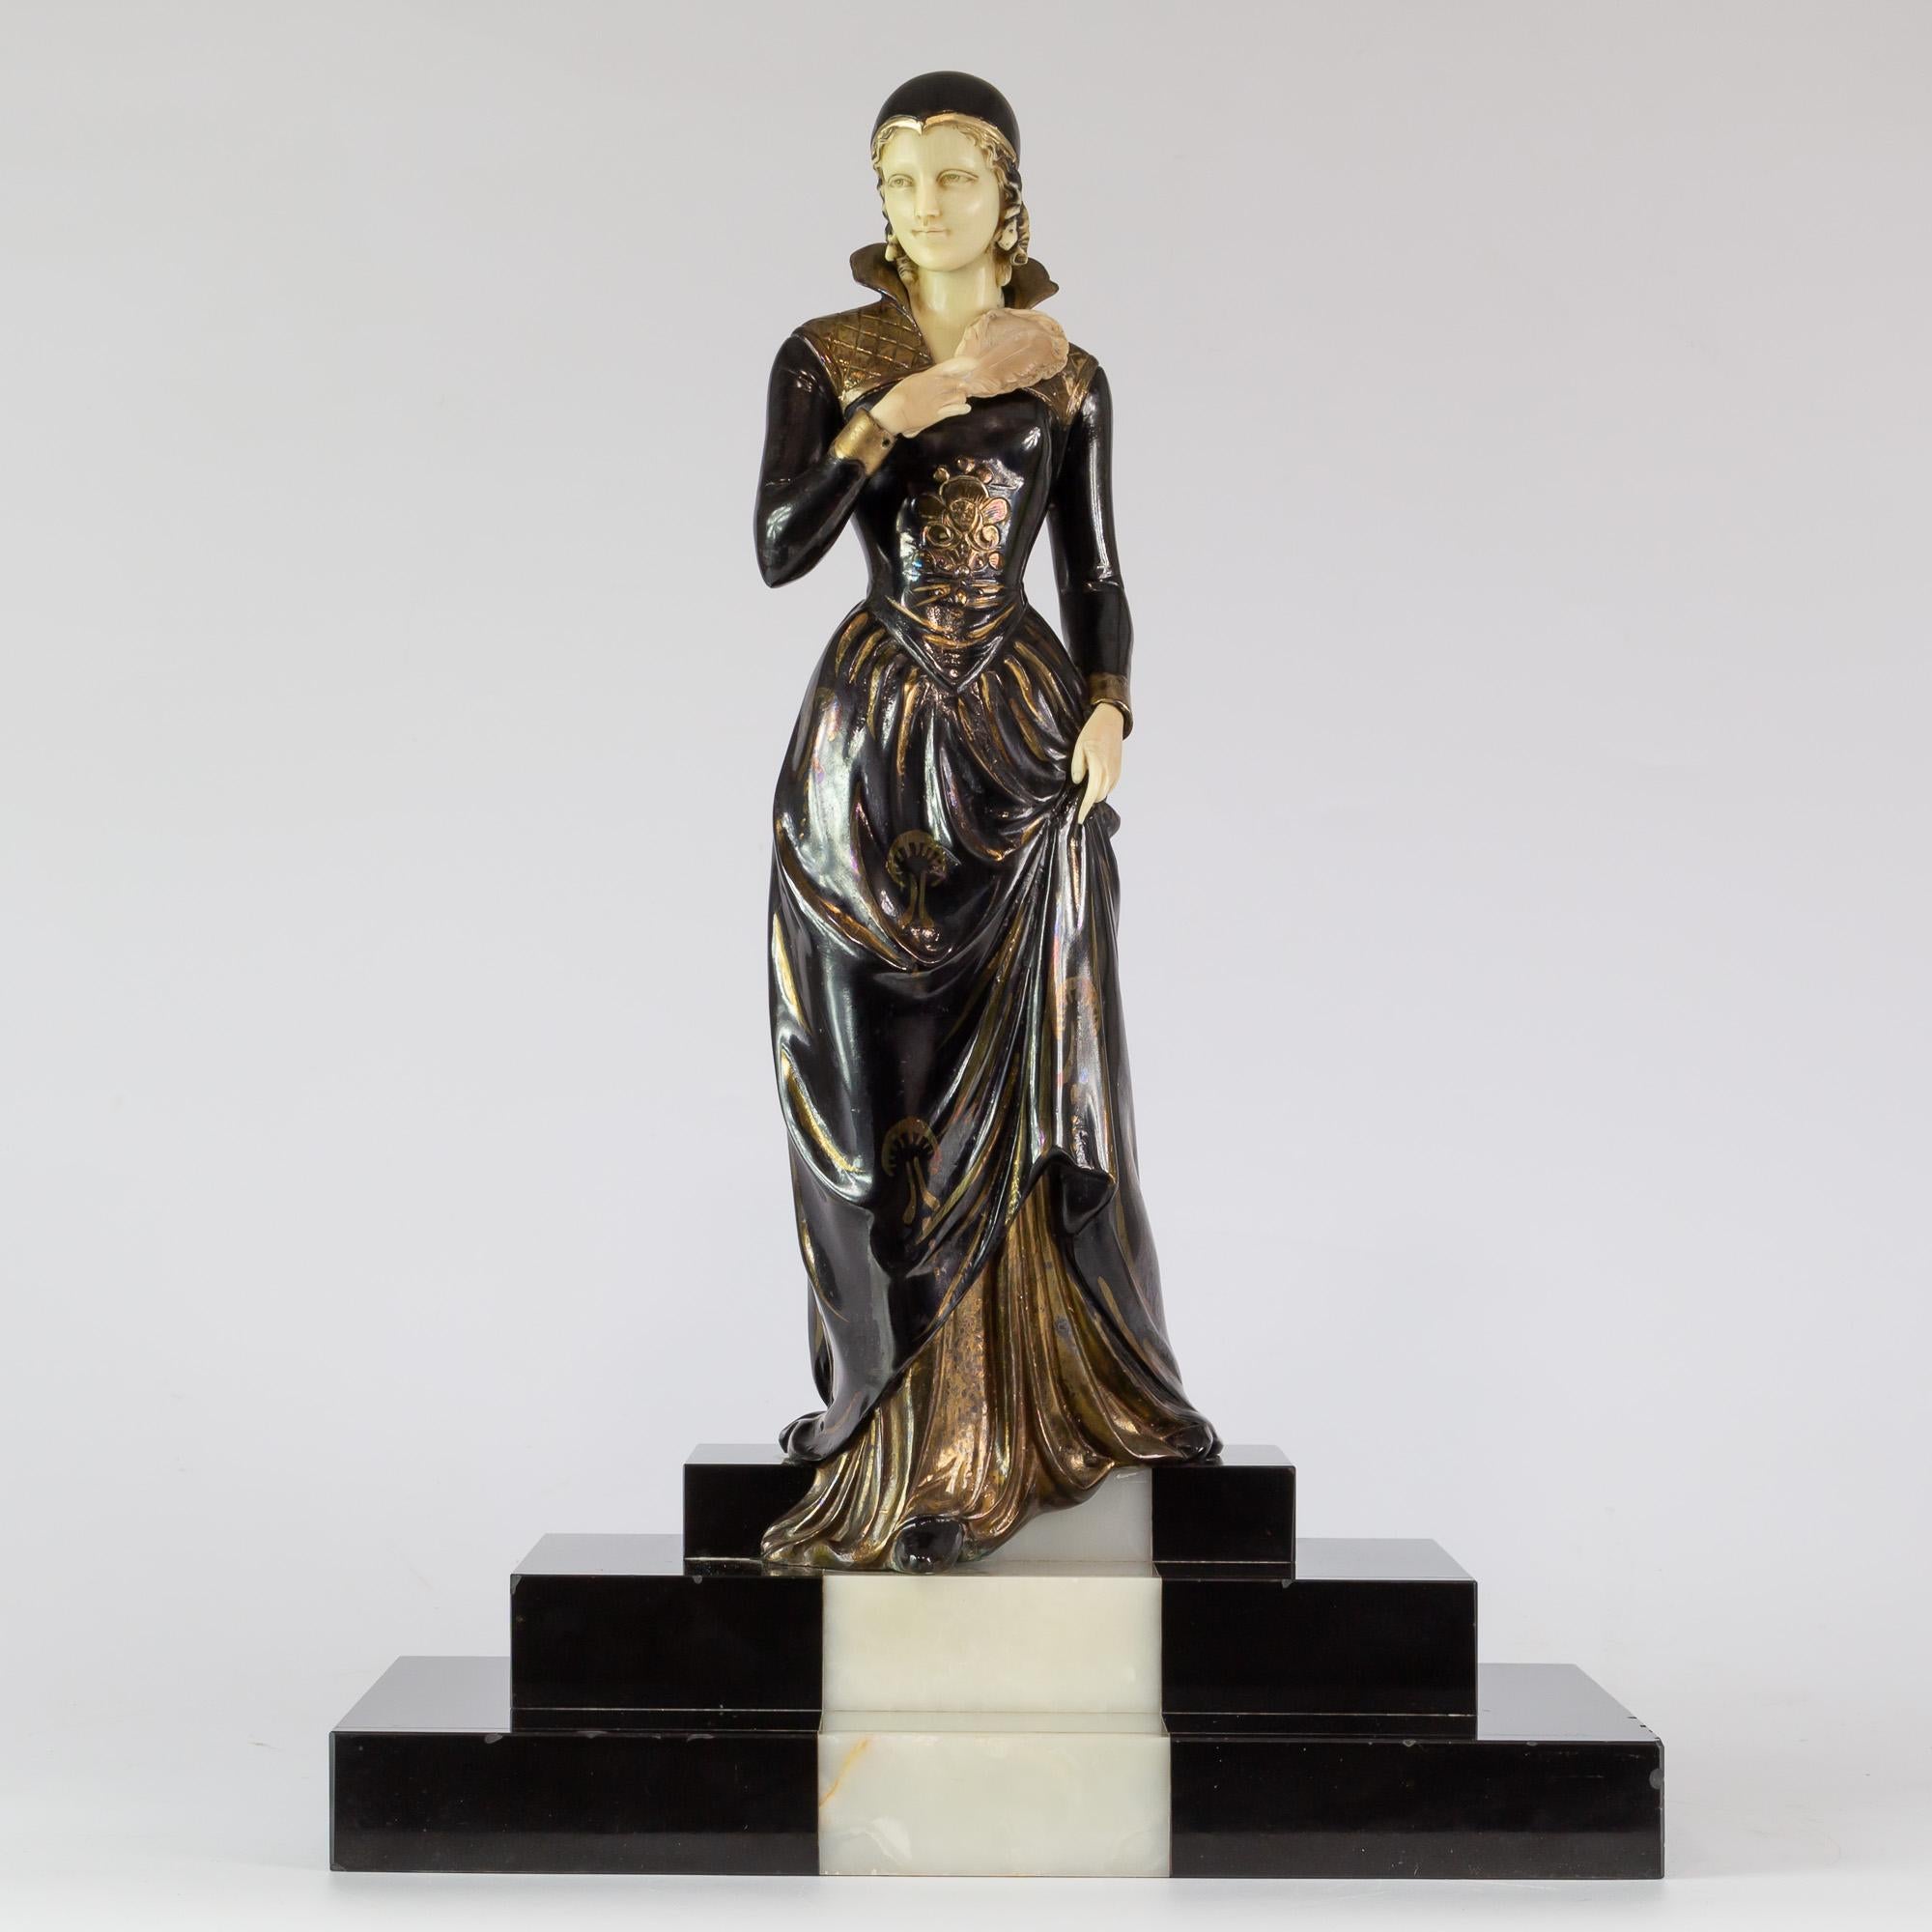 Figure de dame en fonte d'art polychrome et or avec tête et mains en ivoire (PAS IVOIRE)
Socle en marbre belge et onyx
Cette pièce est signée sur la base par 